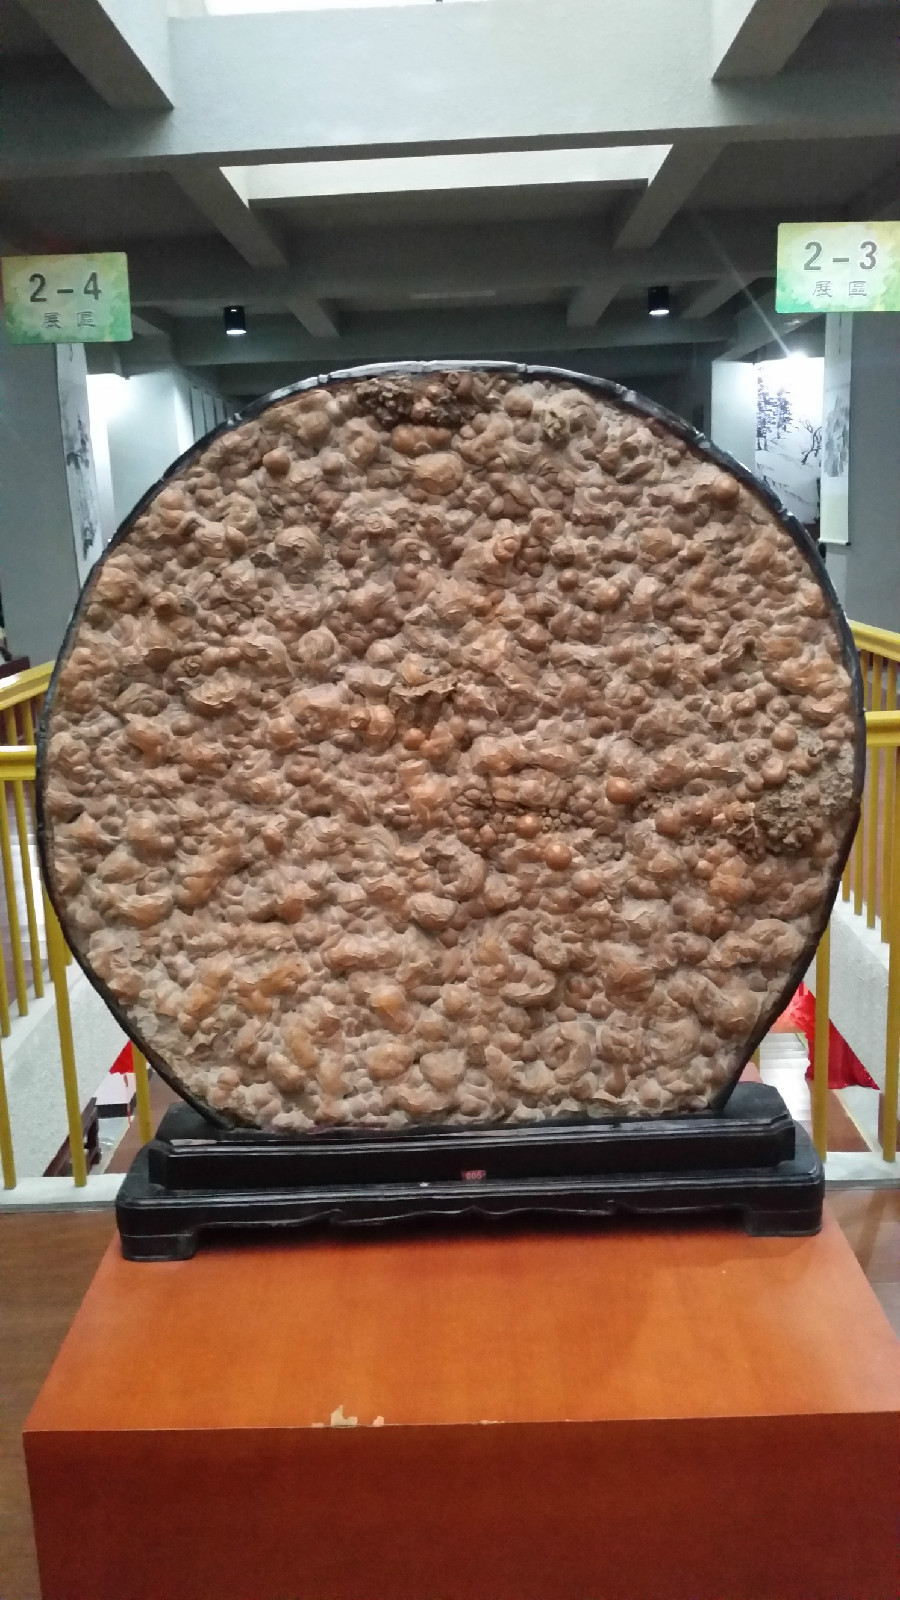 棲霞市地質文化奇石博物館